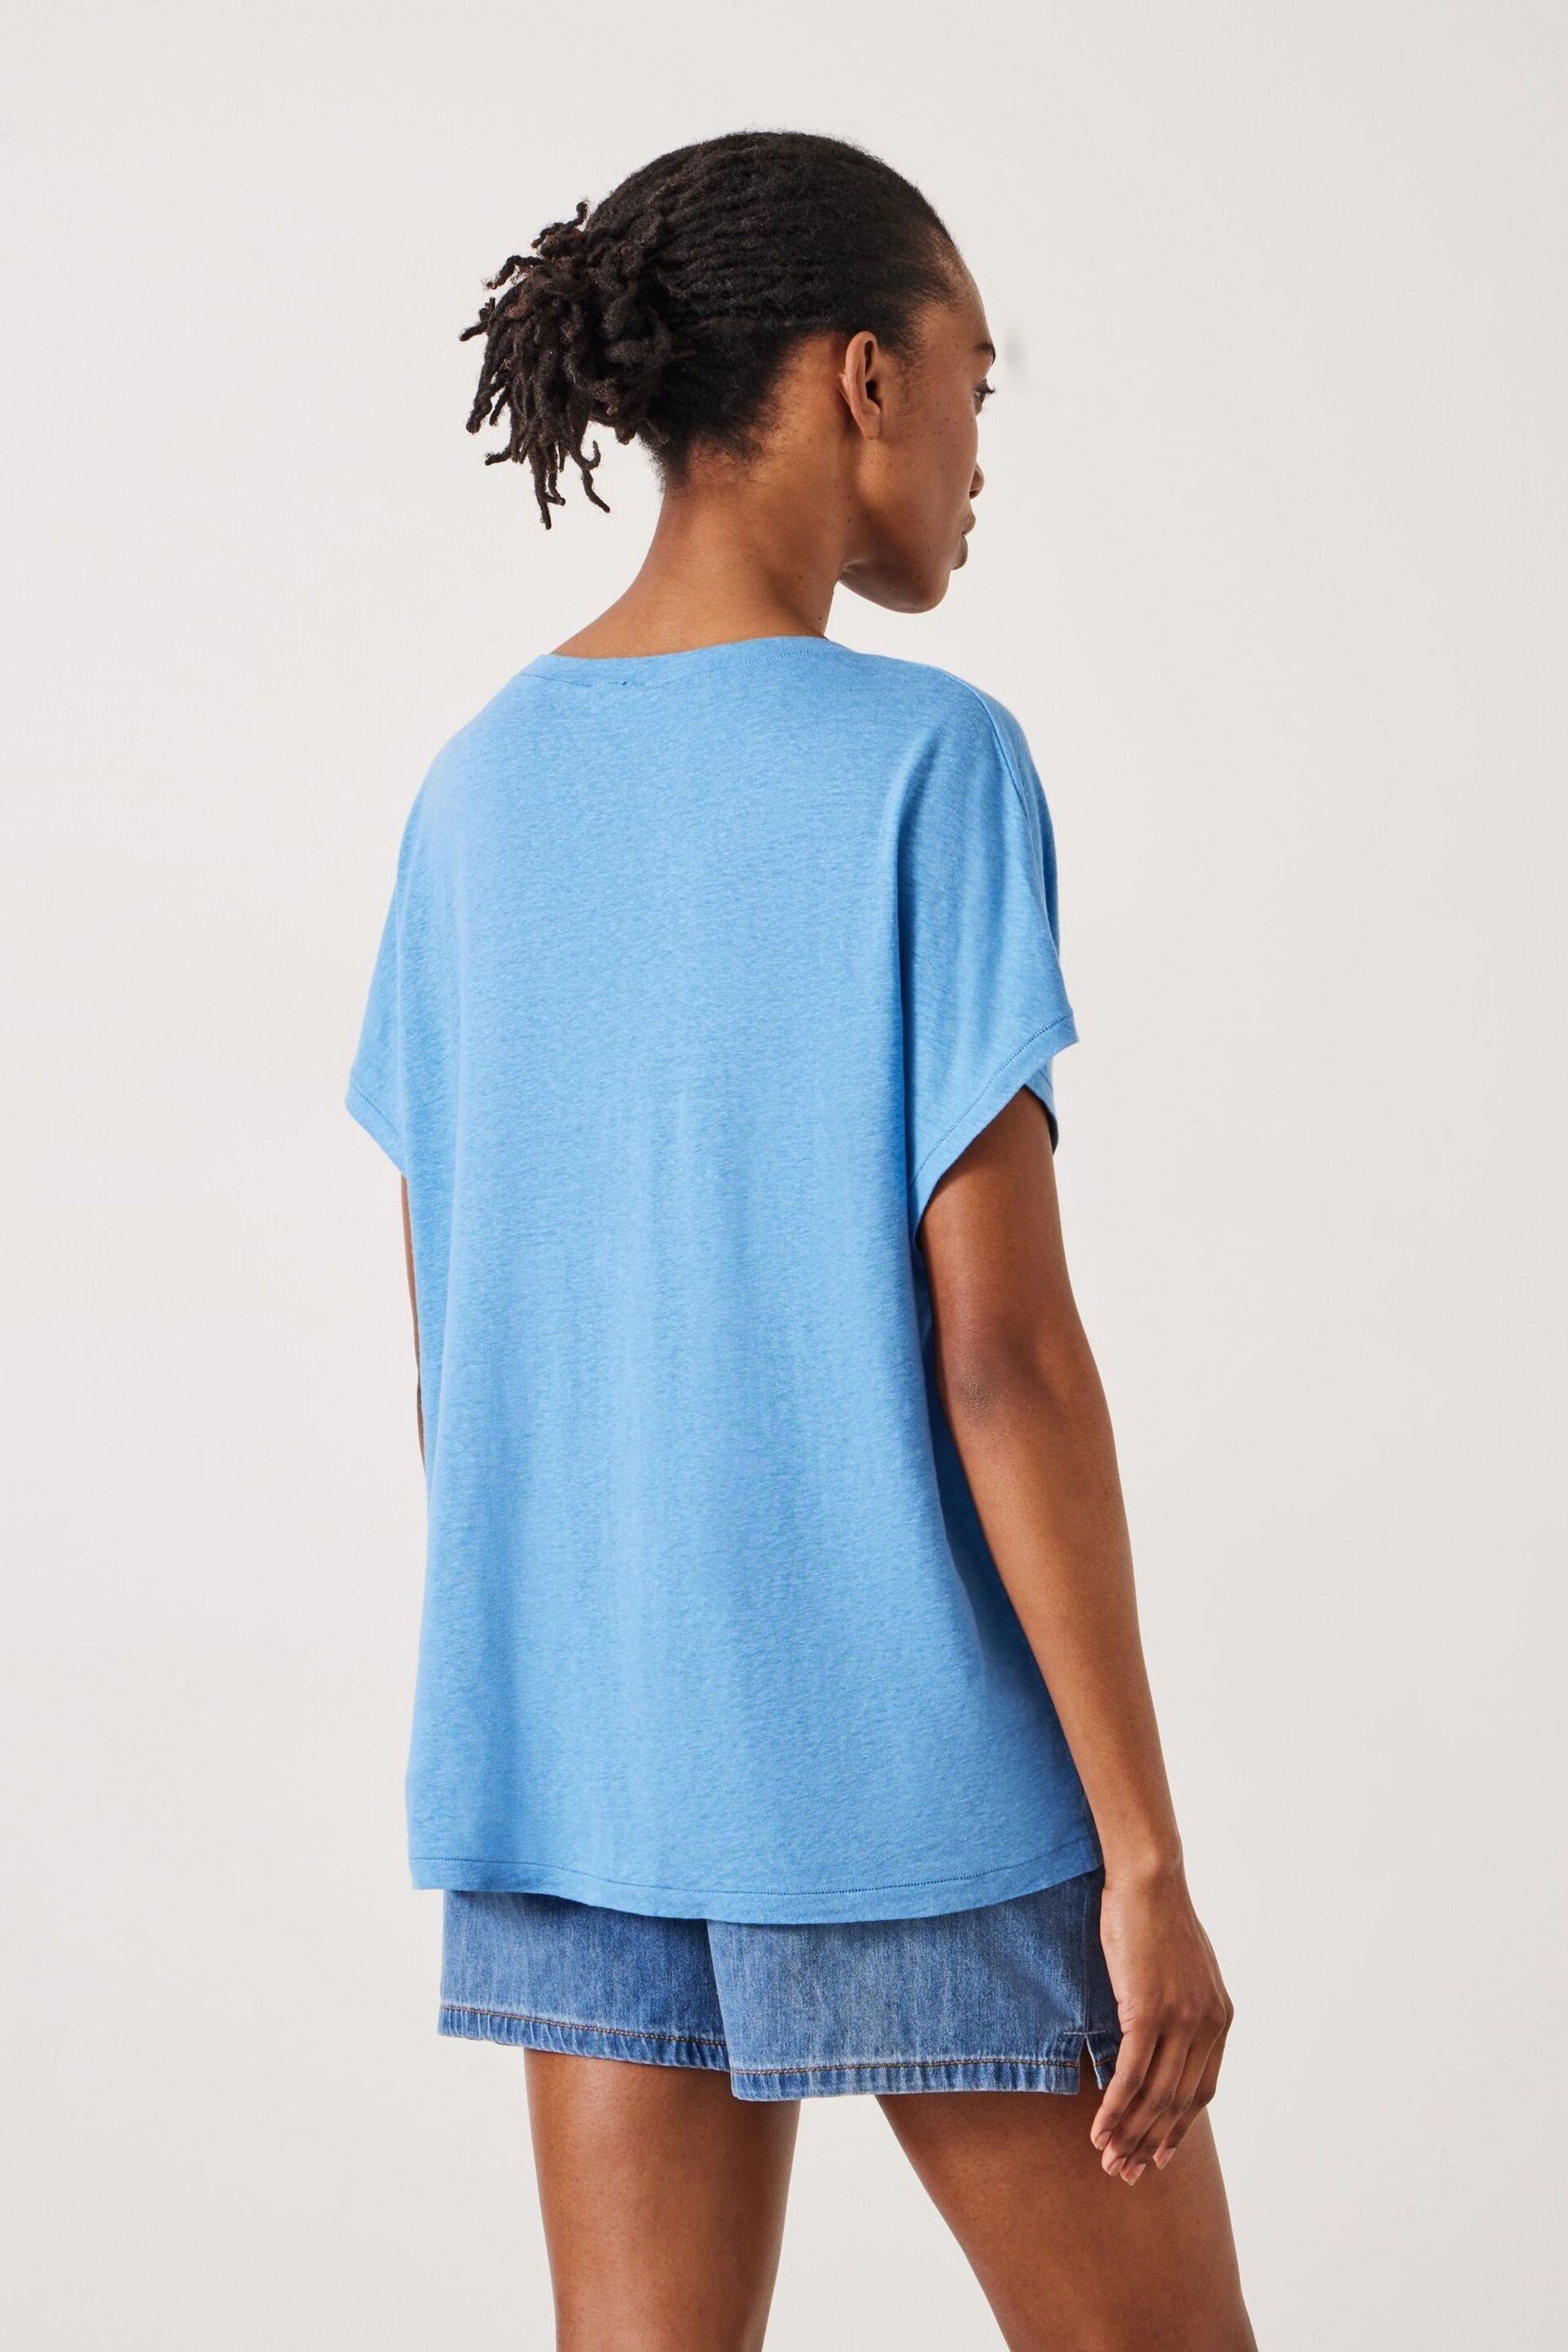 Hush Blue Danny Linen V-Neck T-Shirt - Image 4 of 5